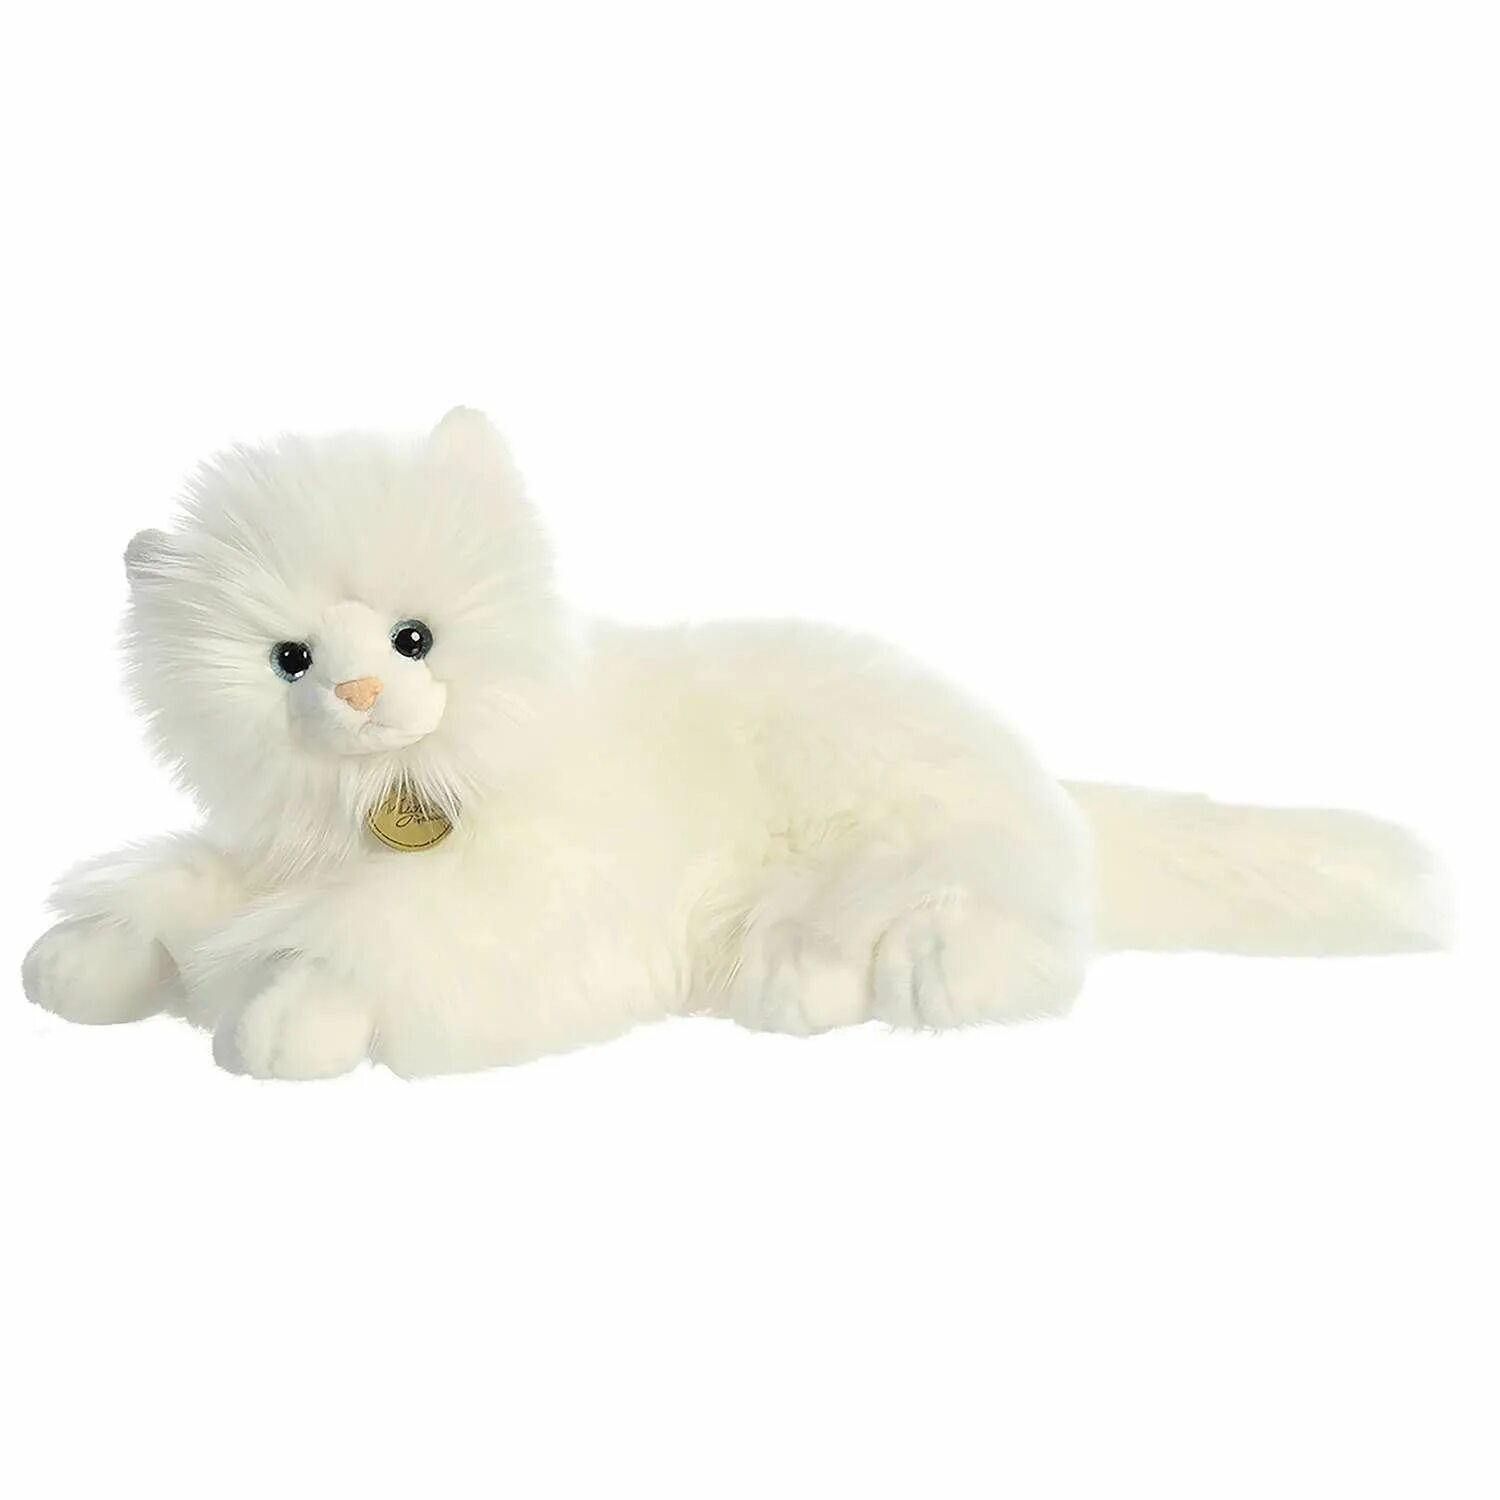 Белую кошку белую кошку игрушку. Игрушка мягкая Aurora кошка ангорская 190438a. Игрушки Aurora Miyoni кошки. Мягкая игрушка Aurora ангорская кошка. Мягкая игрушка Aurora кошка(30822a).